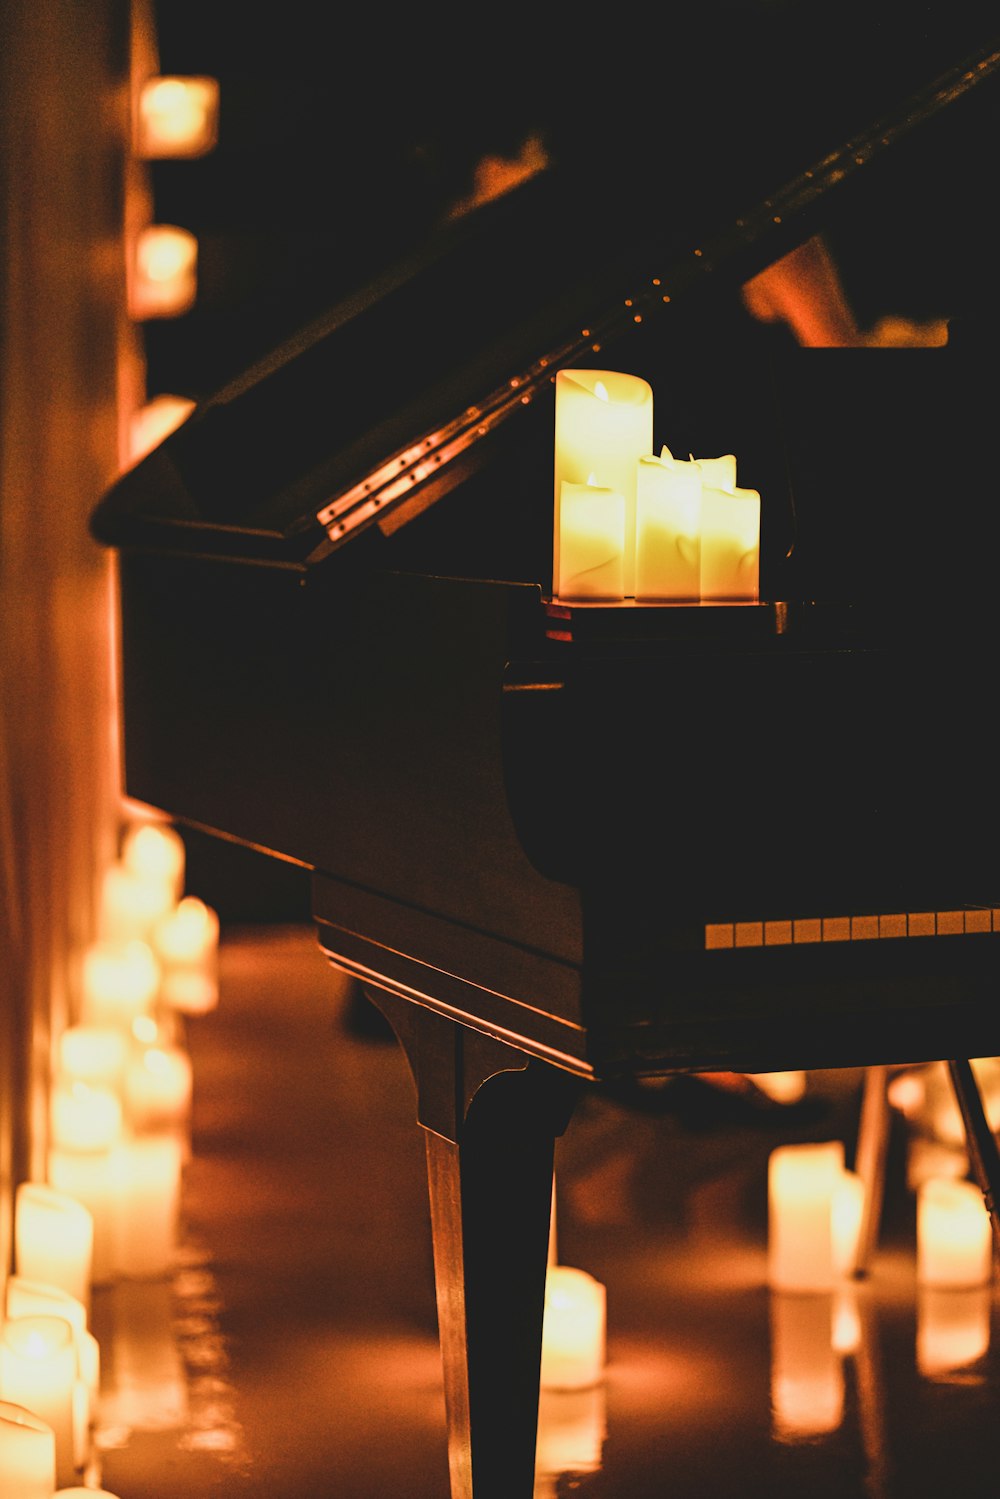 Ein Klavier und Kerzen werden in einem dunklen Raum angezündet